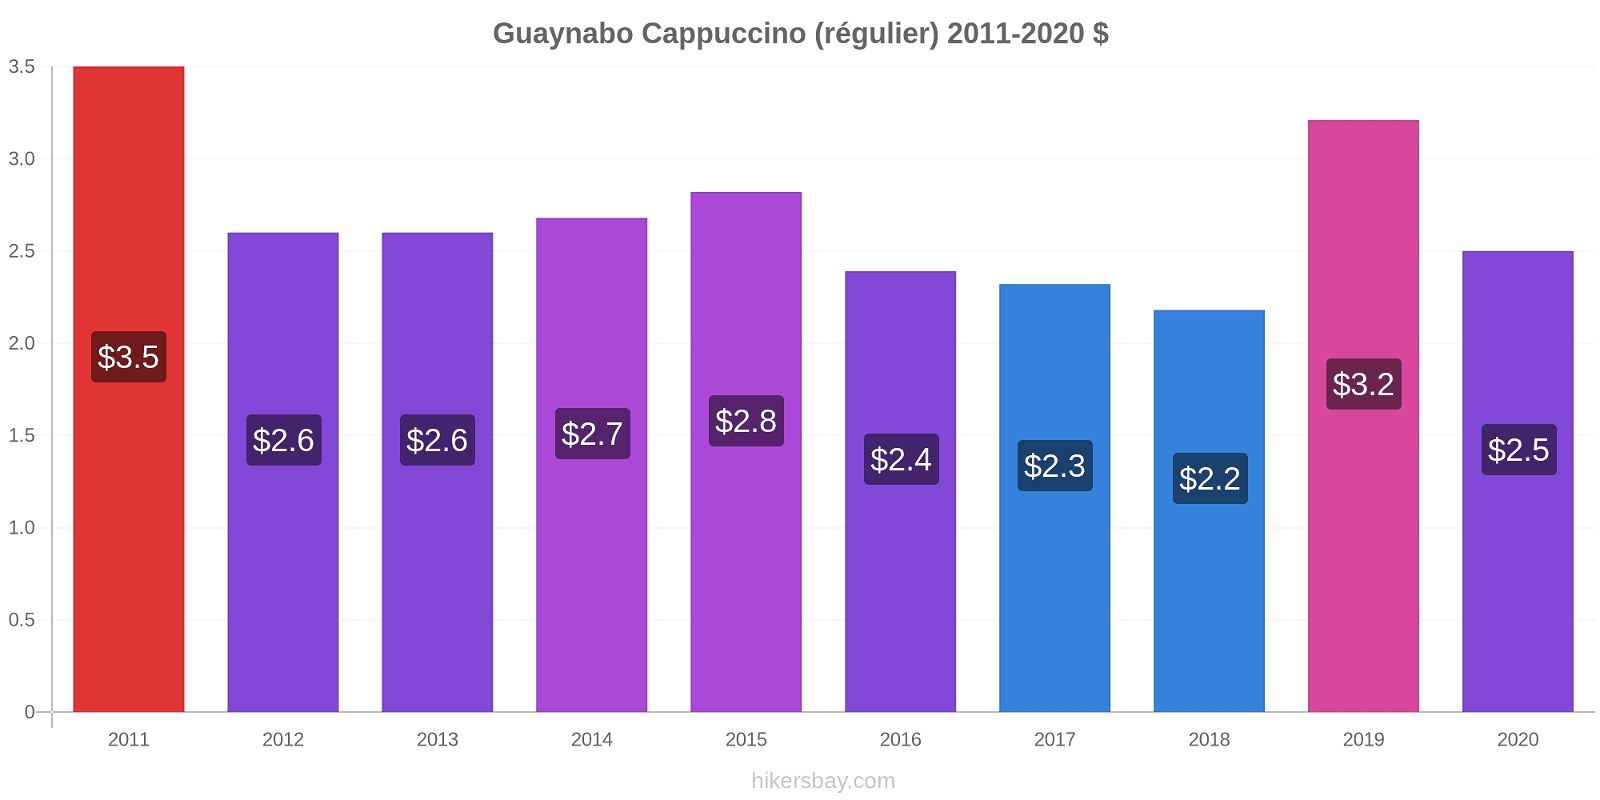 Guaynabo changements de prix Cappuccino (régulier) hikersbay.com